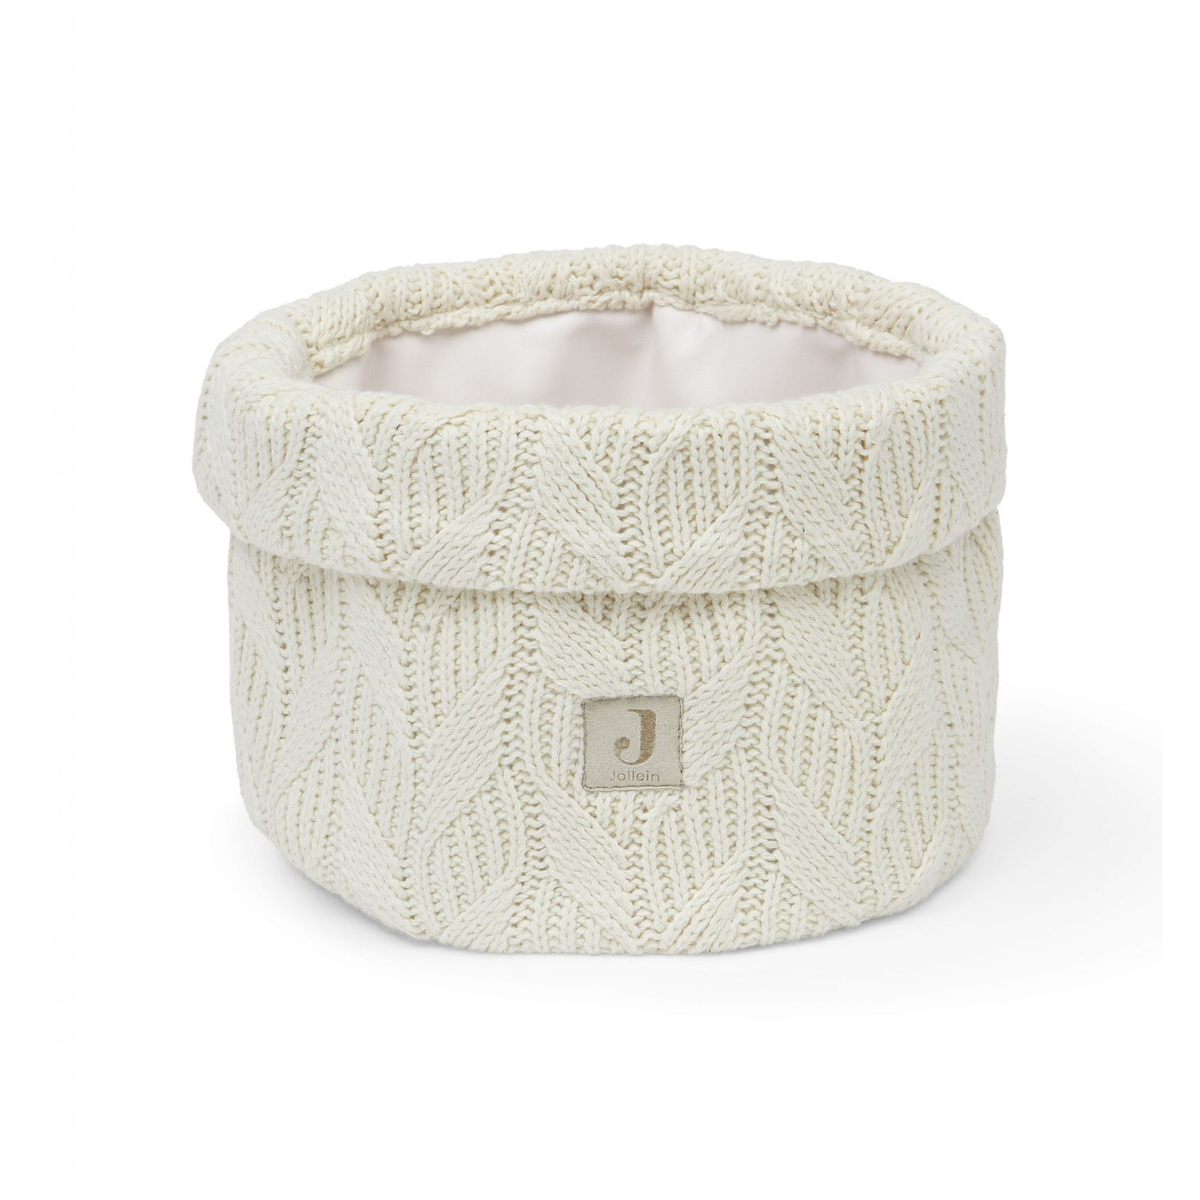 JOLLEIN – Panier de rangement knit ivoire